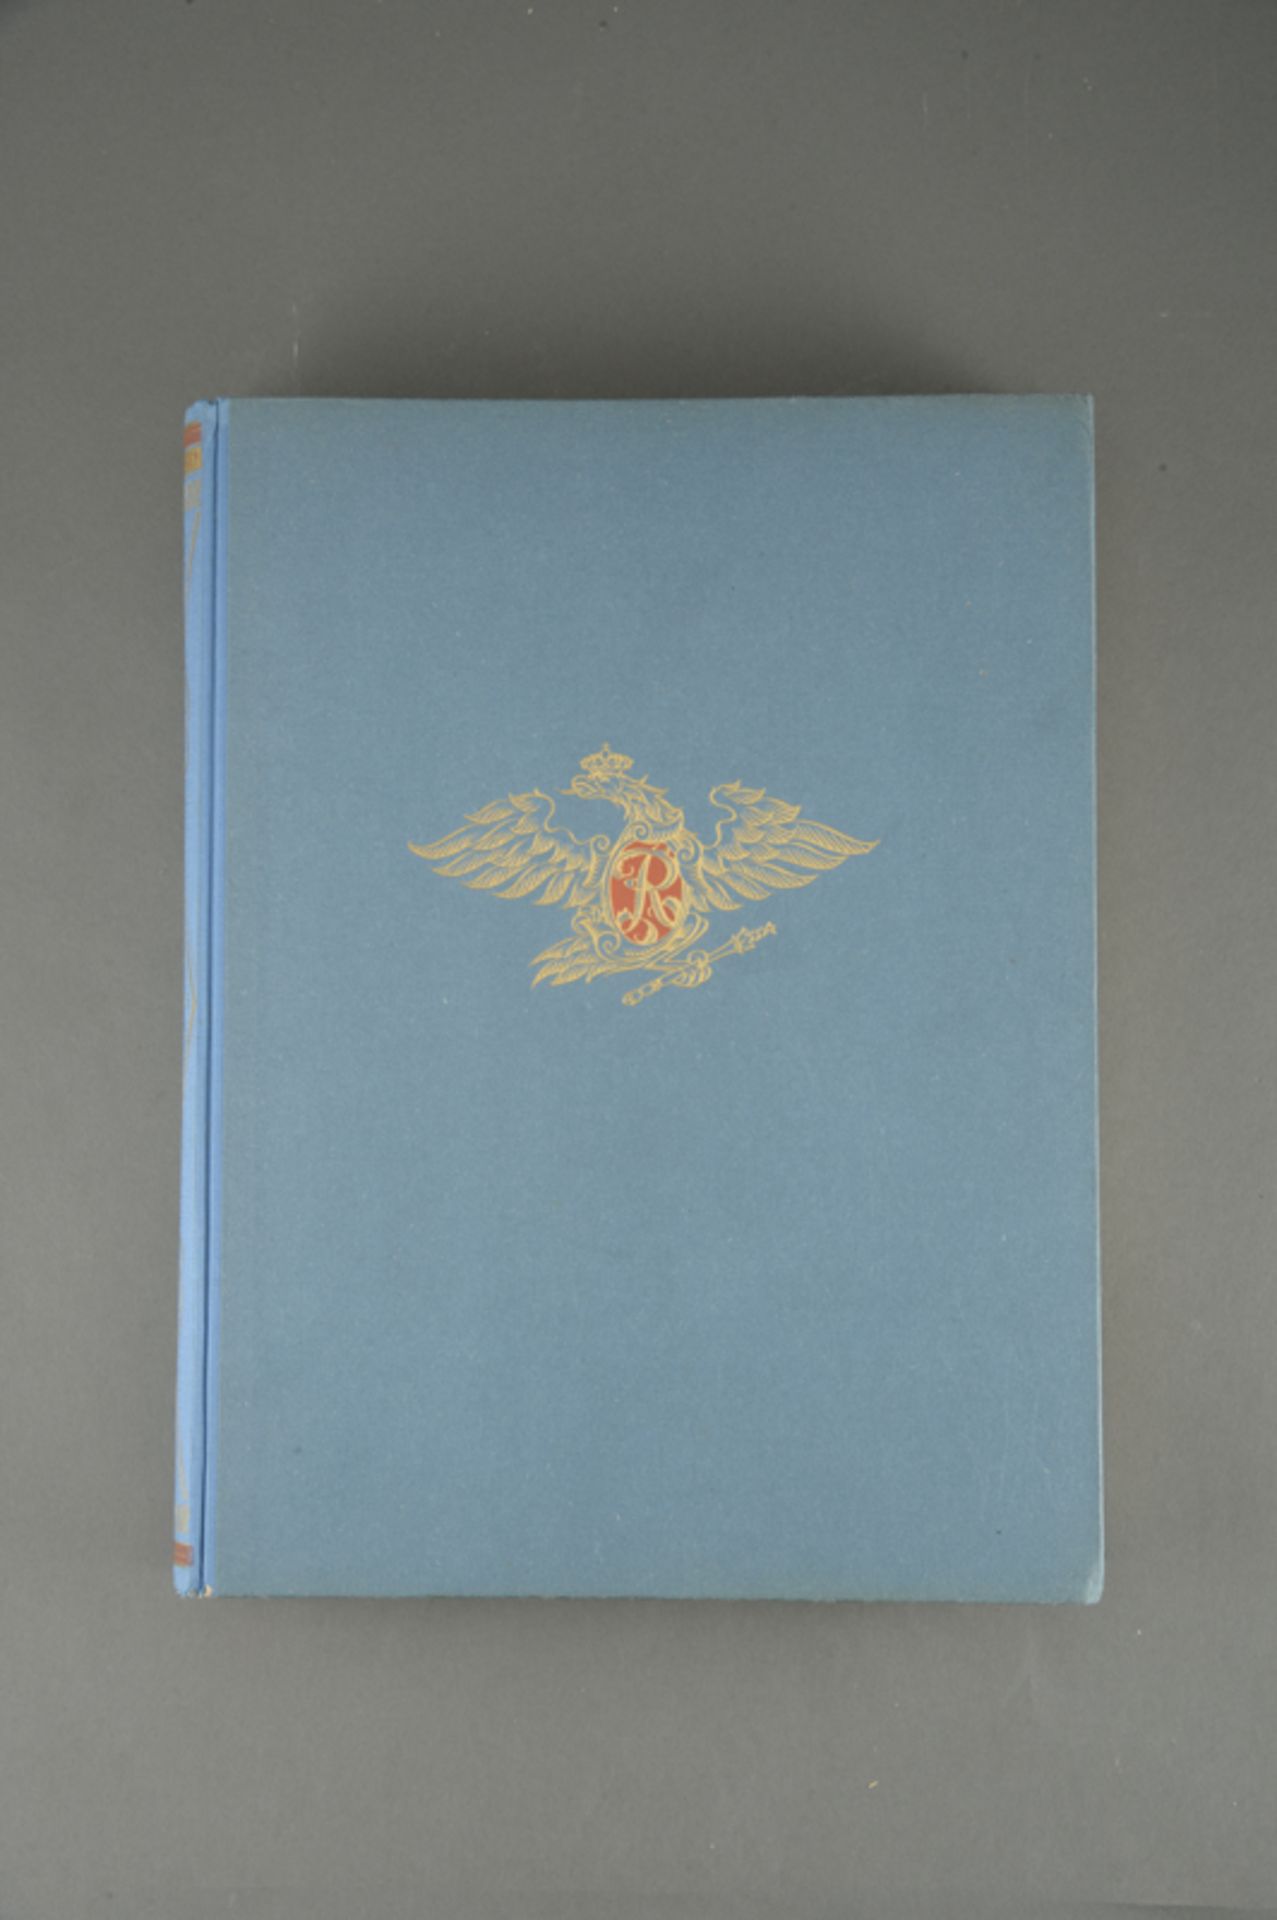 Buch: Fridericus Rex, "Ein Heldenleben" von Herman von Petersdorff, Mit Zeitgenössischen Bildern - Bild 2 aus 2